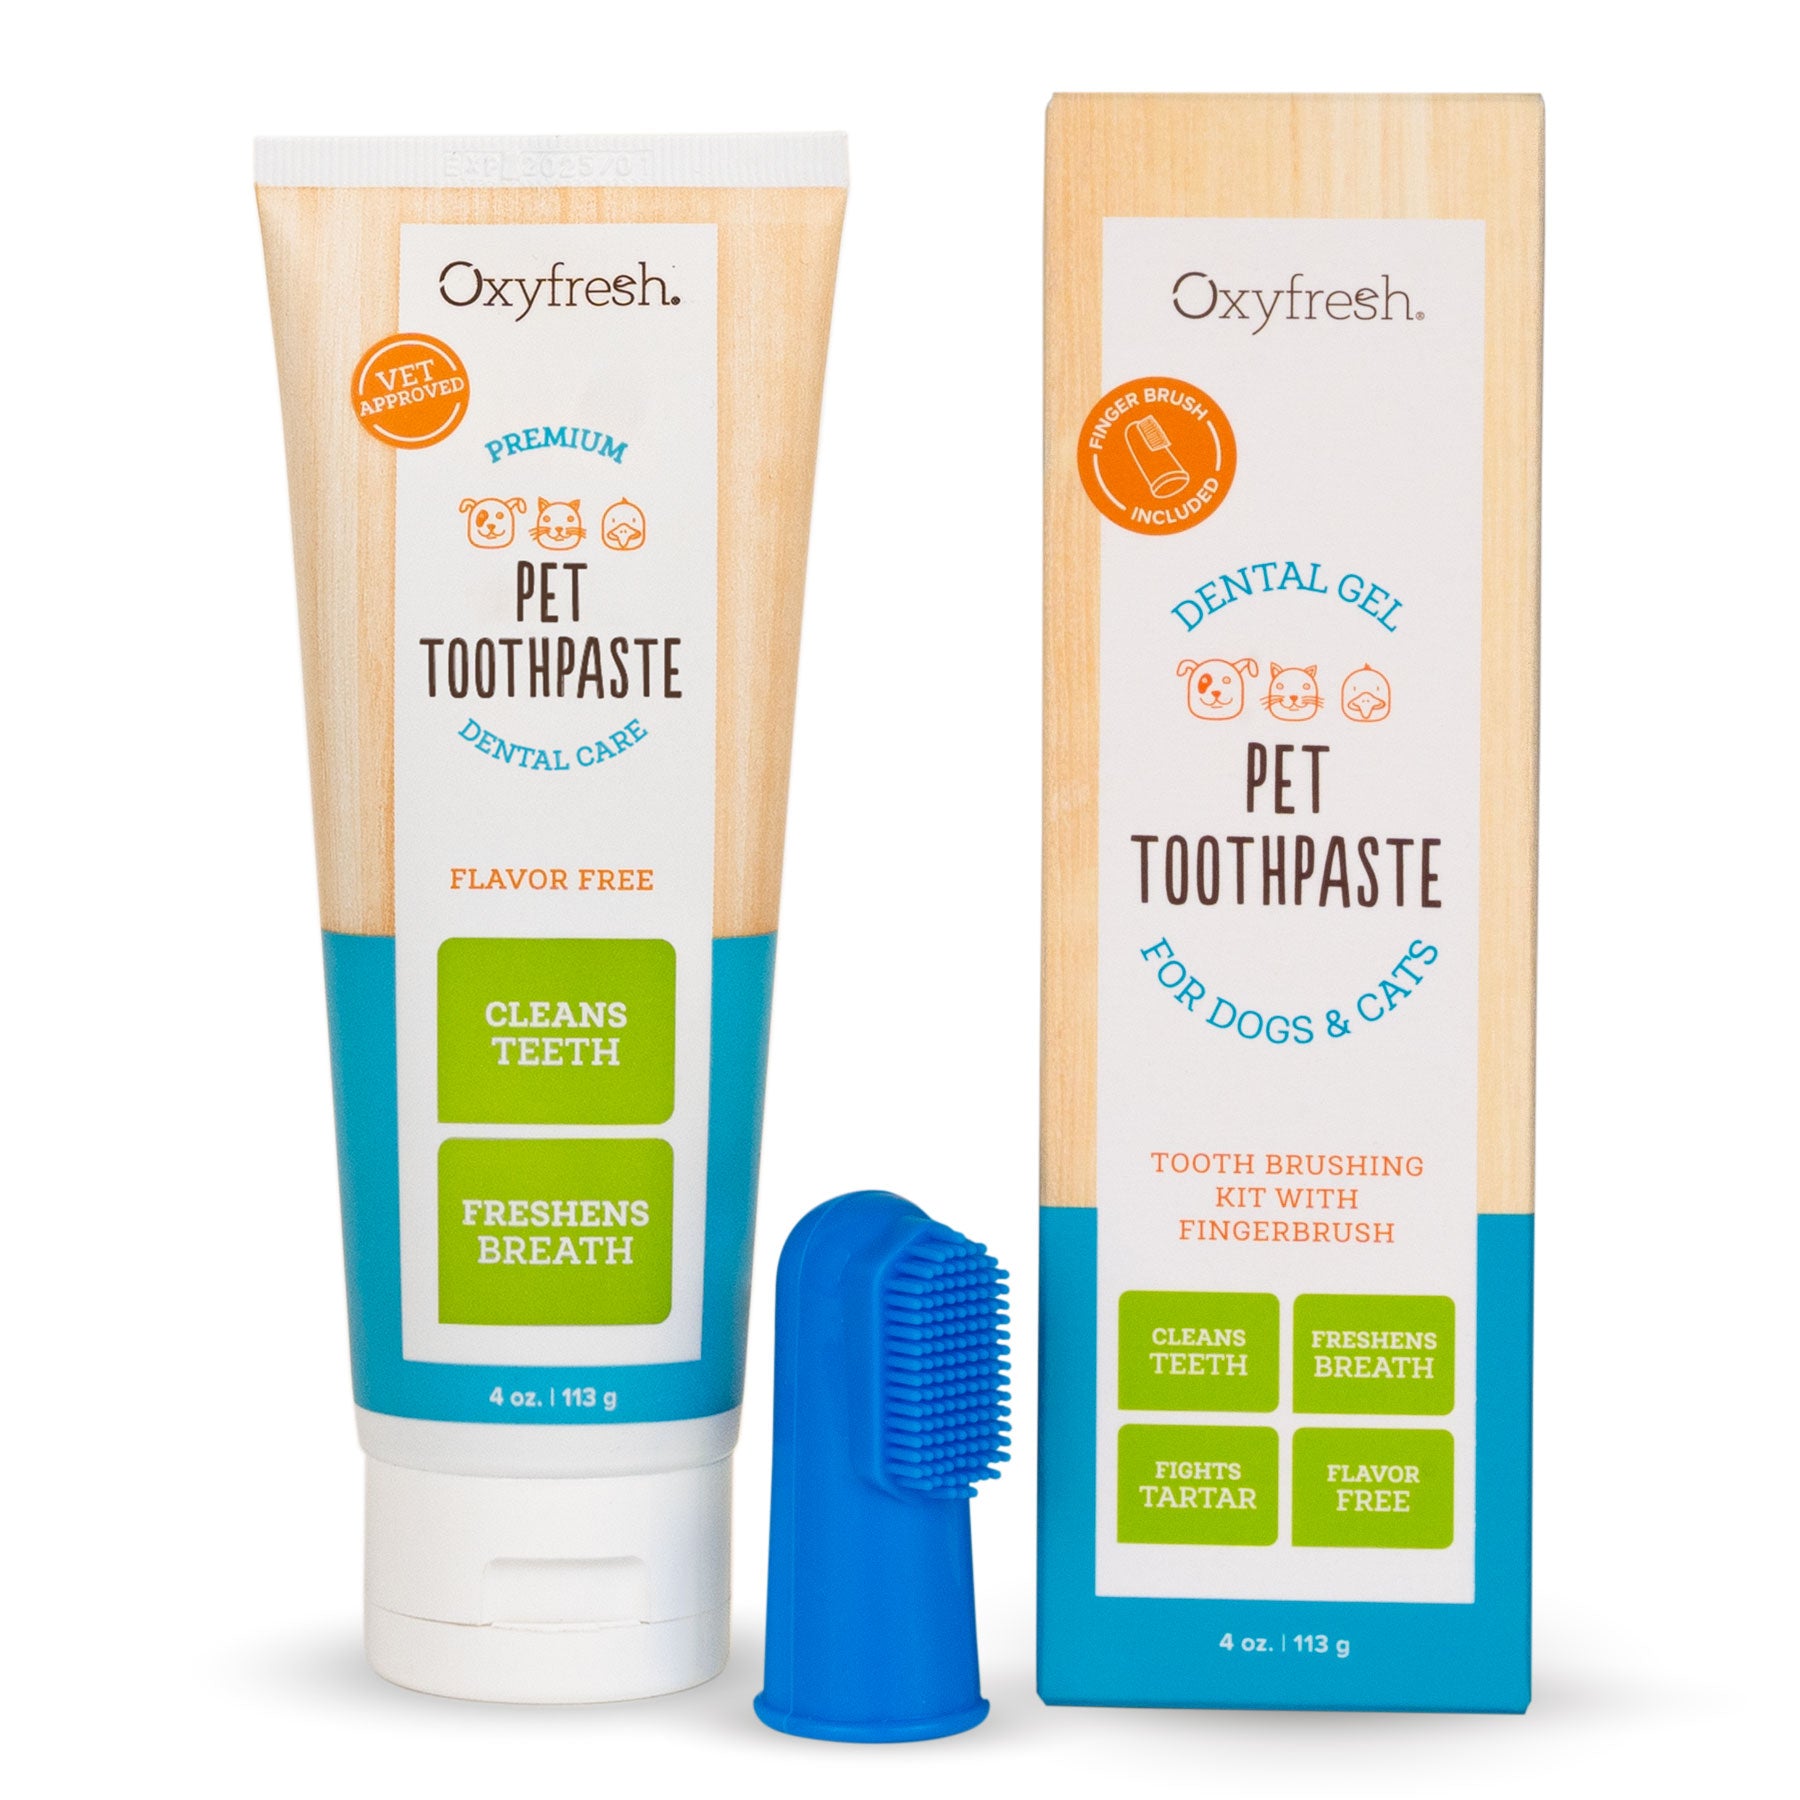 Premium Pet Toothpaste - Best Way To Clean Pet Teeth & Remove Plaque